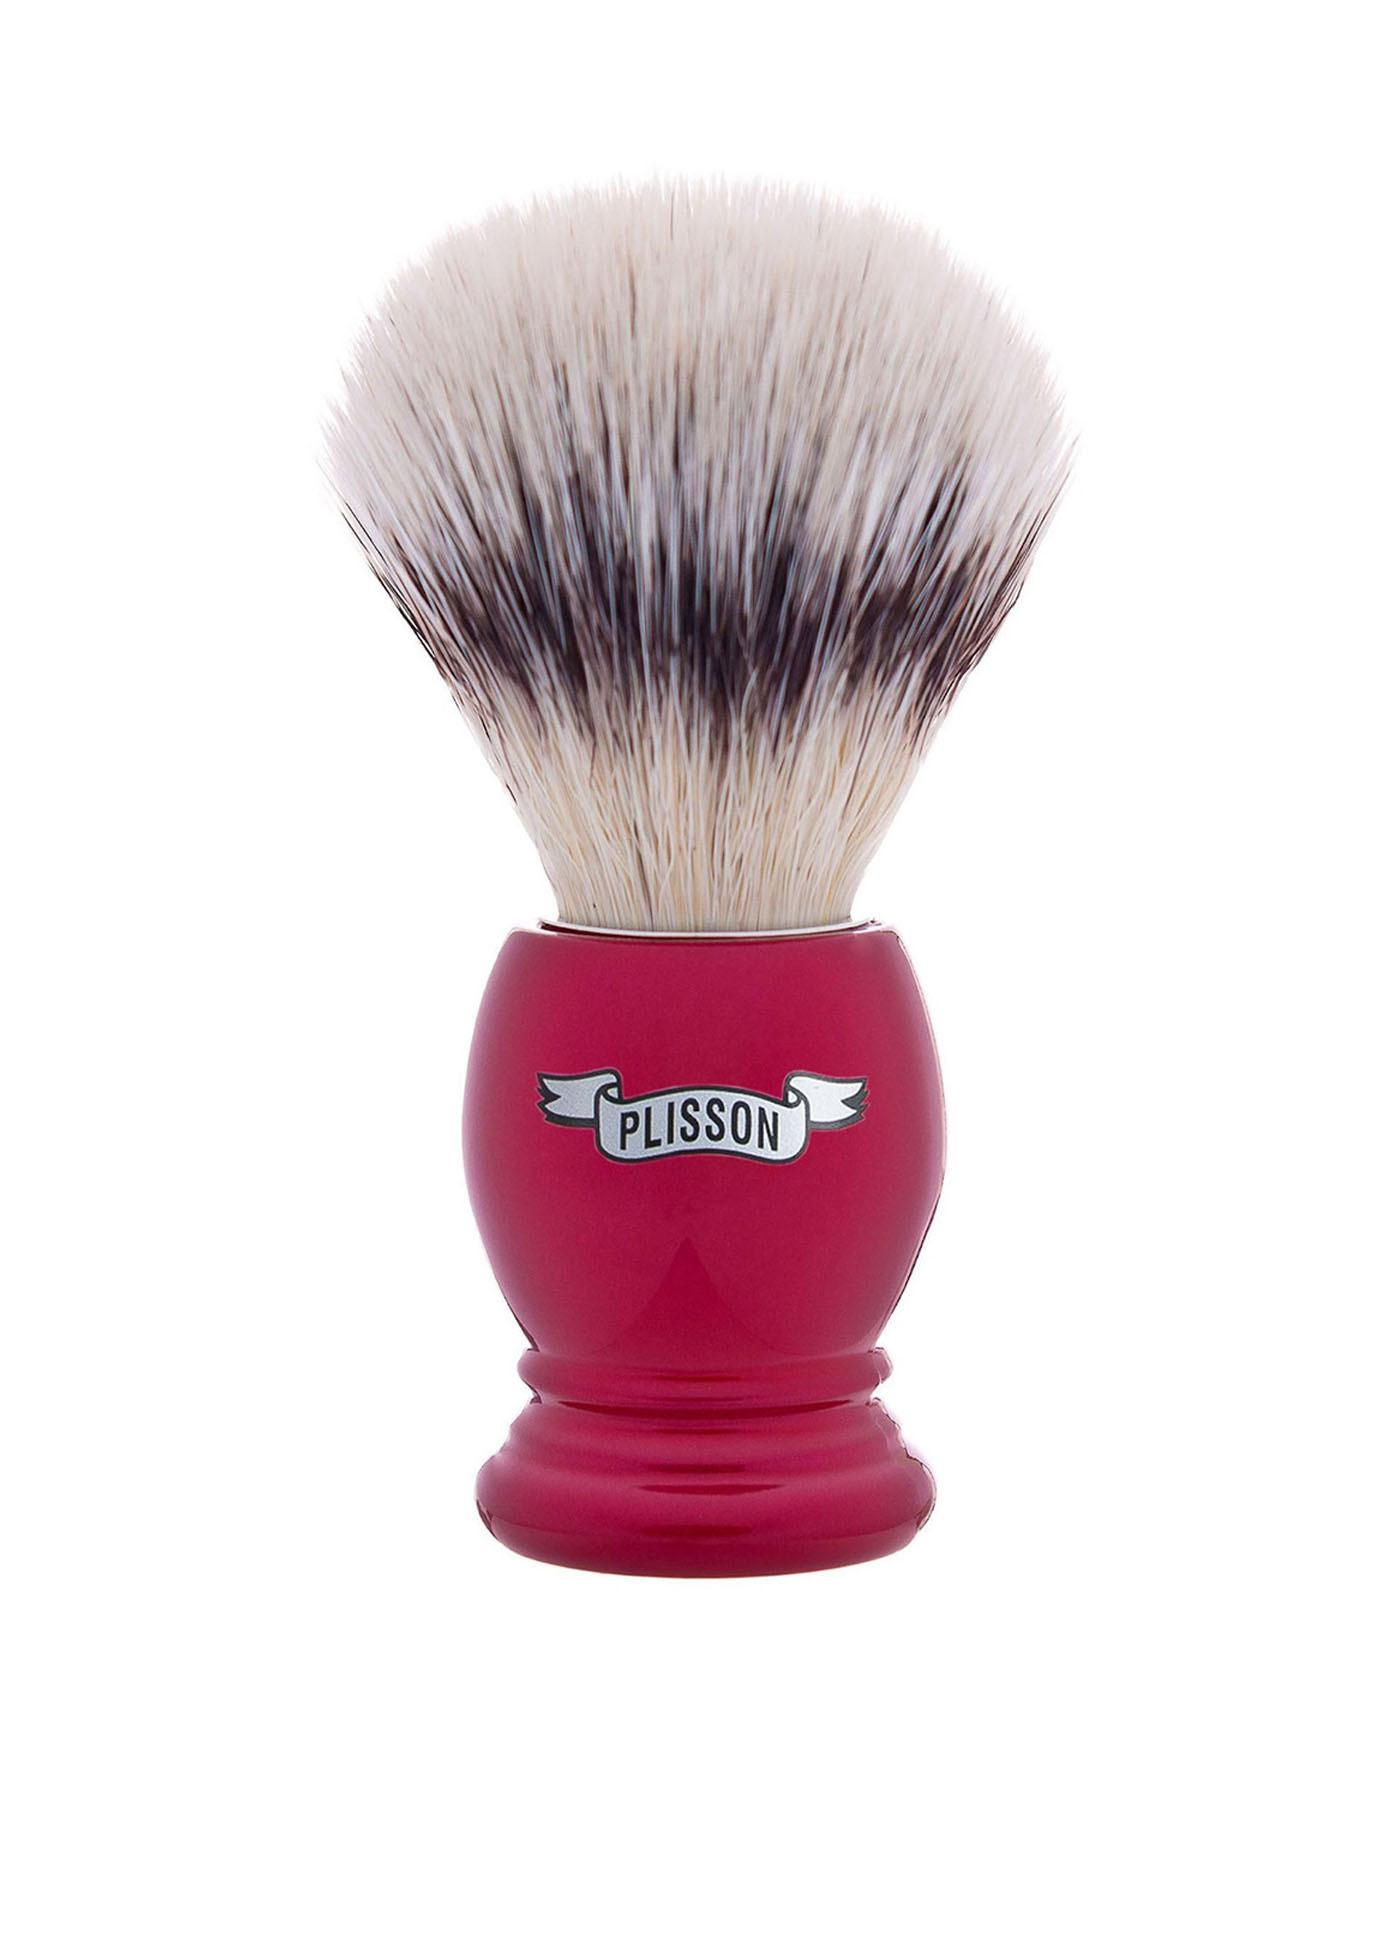 Plisson 1808  Rasierset Pearl Red & High mountain white fibre shaving brush 